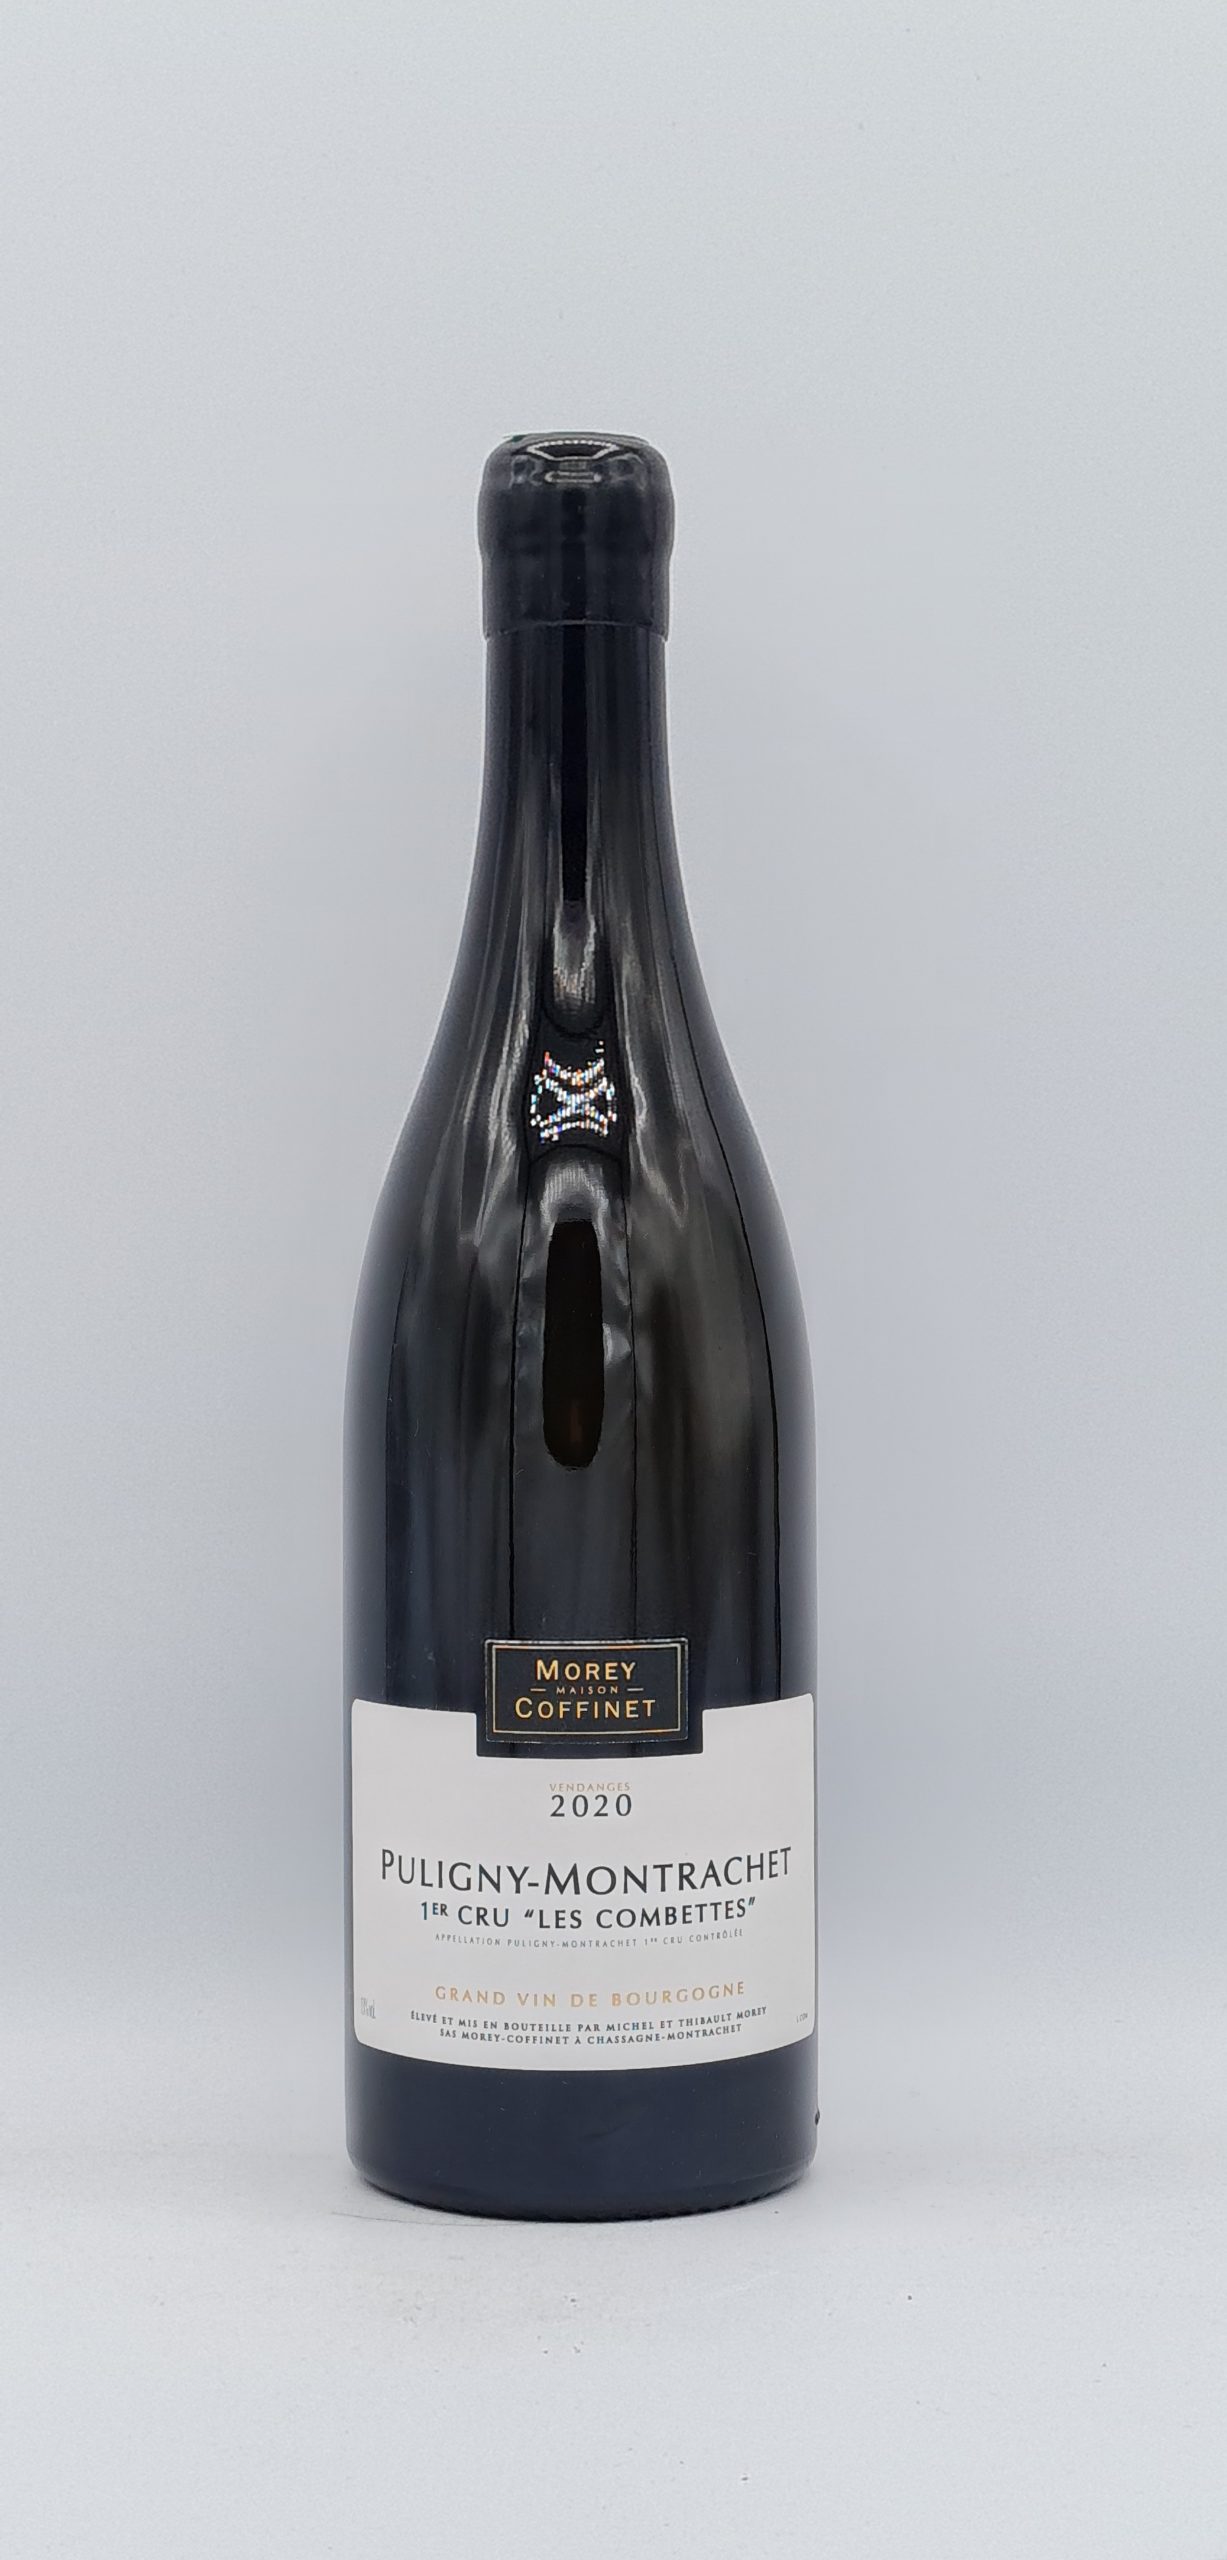 Bourgogne Puligny-Montrachet 1er cru “Les Combettes” 2020 Domaine Morey-Coffinet